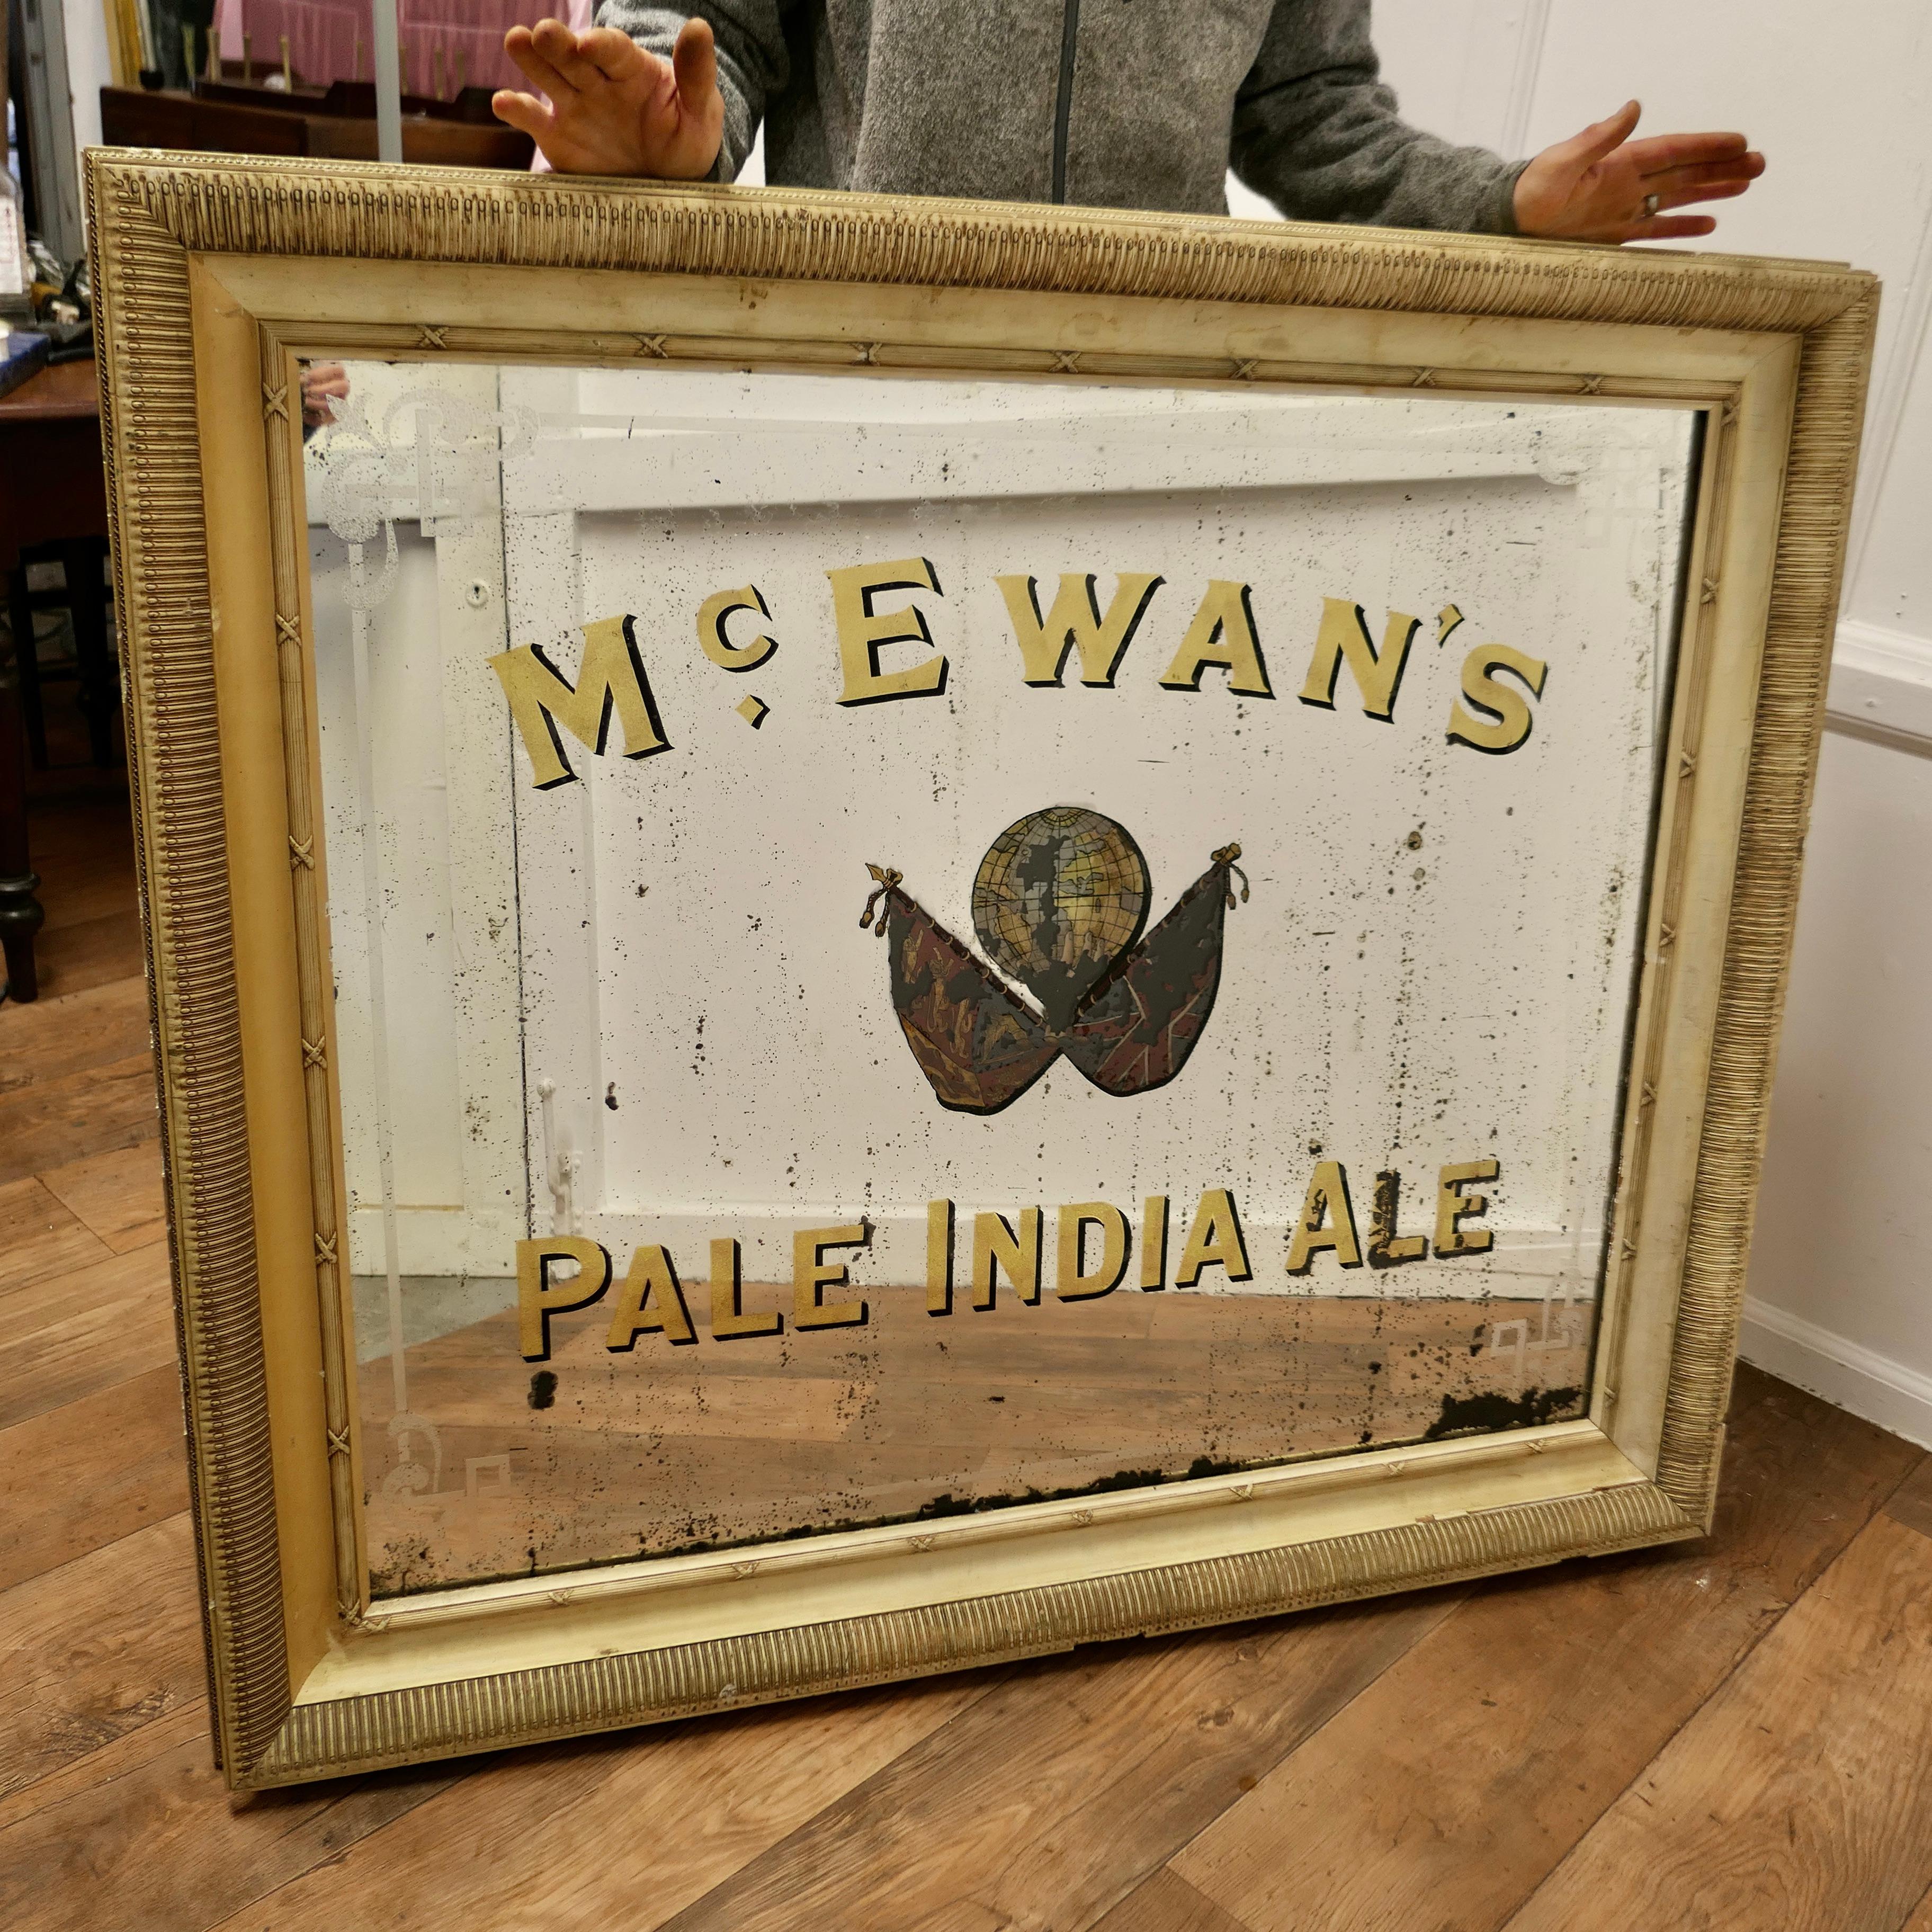 Grand miroir publicitaire pour la bière indienne McEwan's Pale, miroir d'enseigne de pub pour McEwans

Il s'agit d'un rare miroir publicitaire pictural conservé, annonçant la McEwan's Pale India Ale, en feuille d'or et verre gravé.  
Le miroir porte